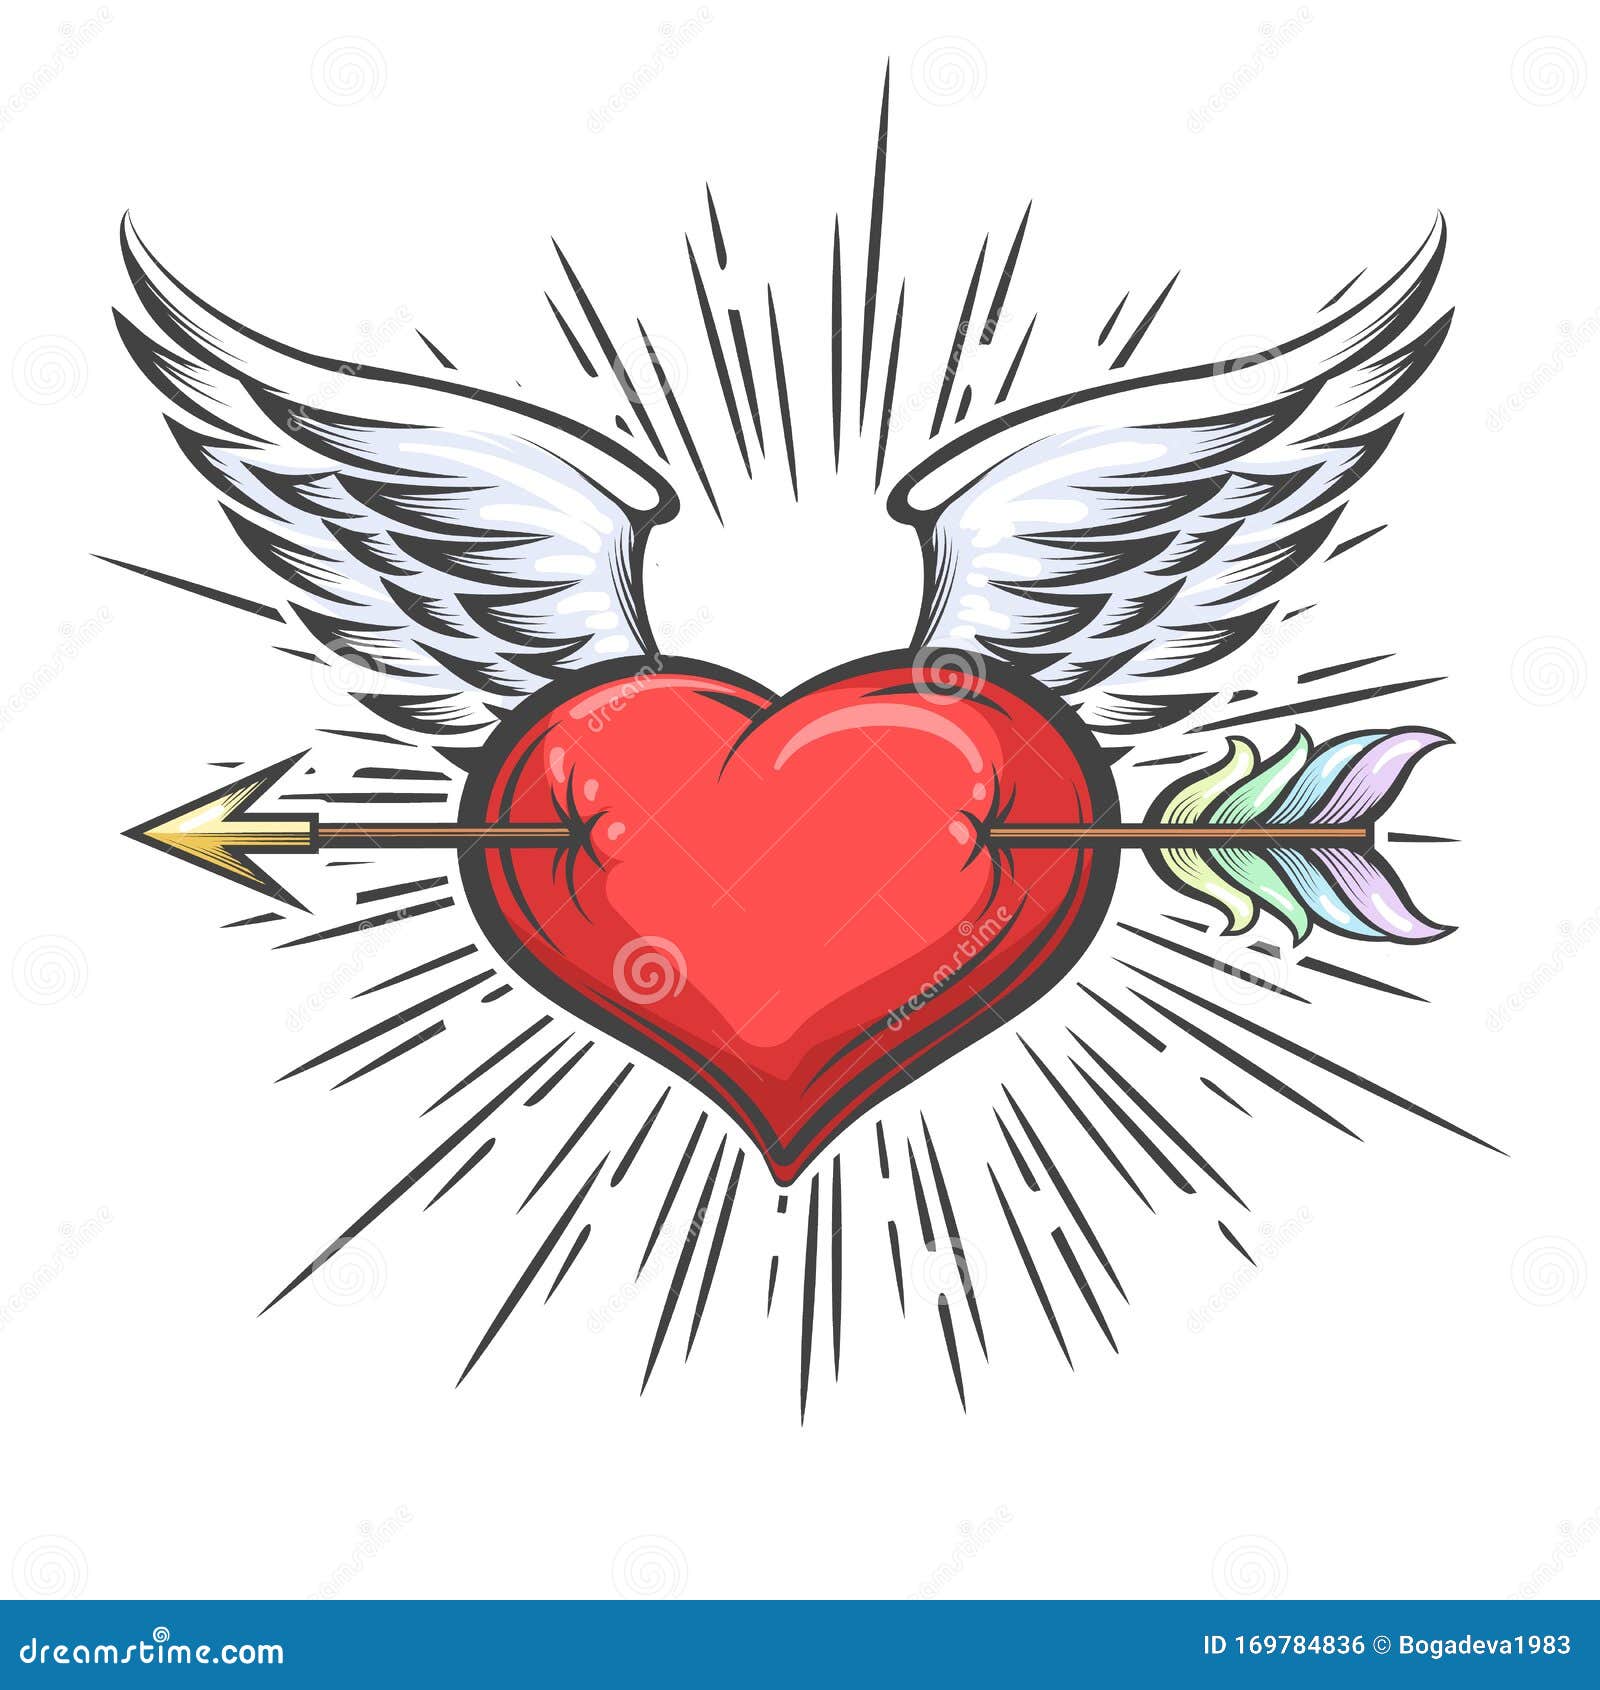 winged heart pierced by arrow tattoo